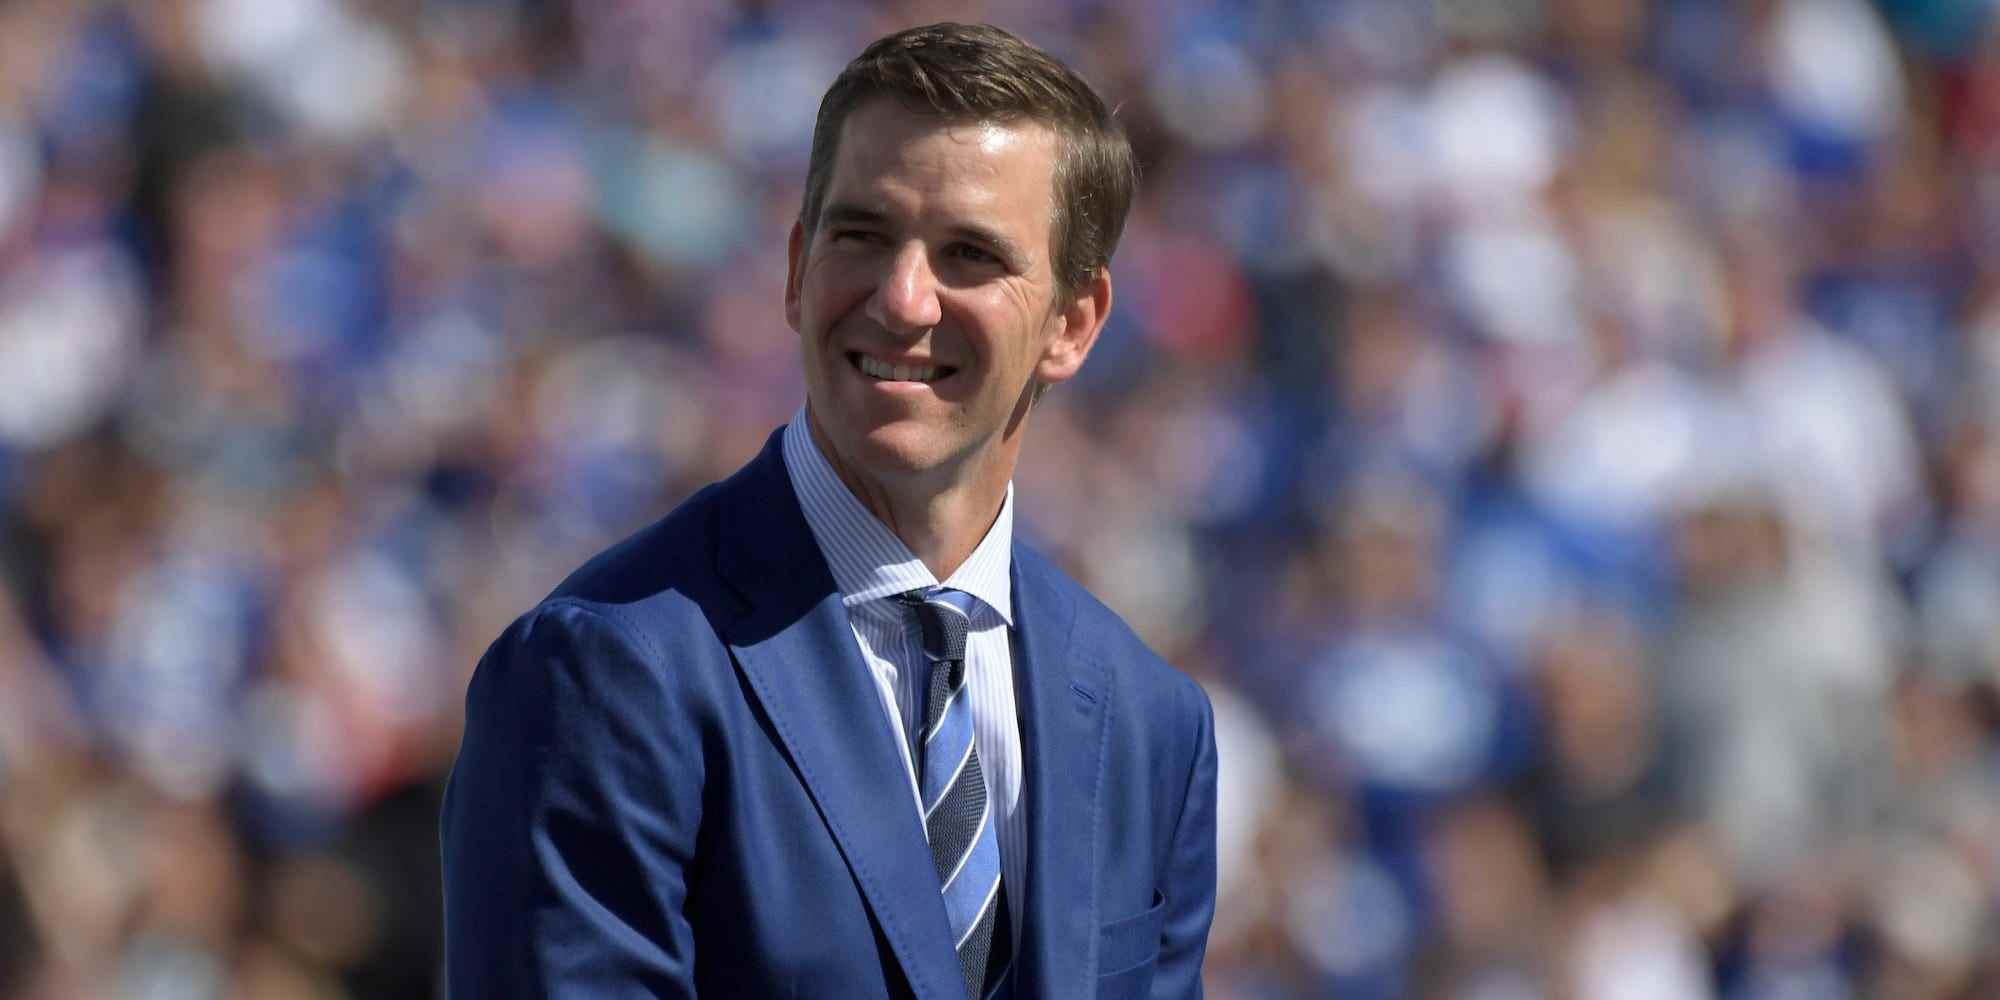 Eli Manning, gekleidet in einen Anzug, lächelt und schaut auf seine Ruhestandszeremonie im Giants-Trikot im Jahr 2021.